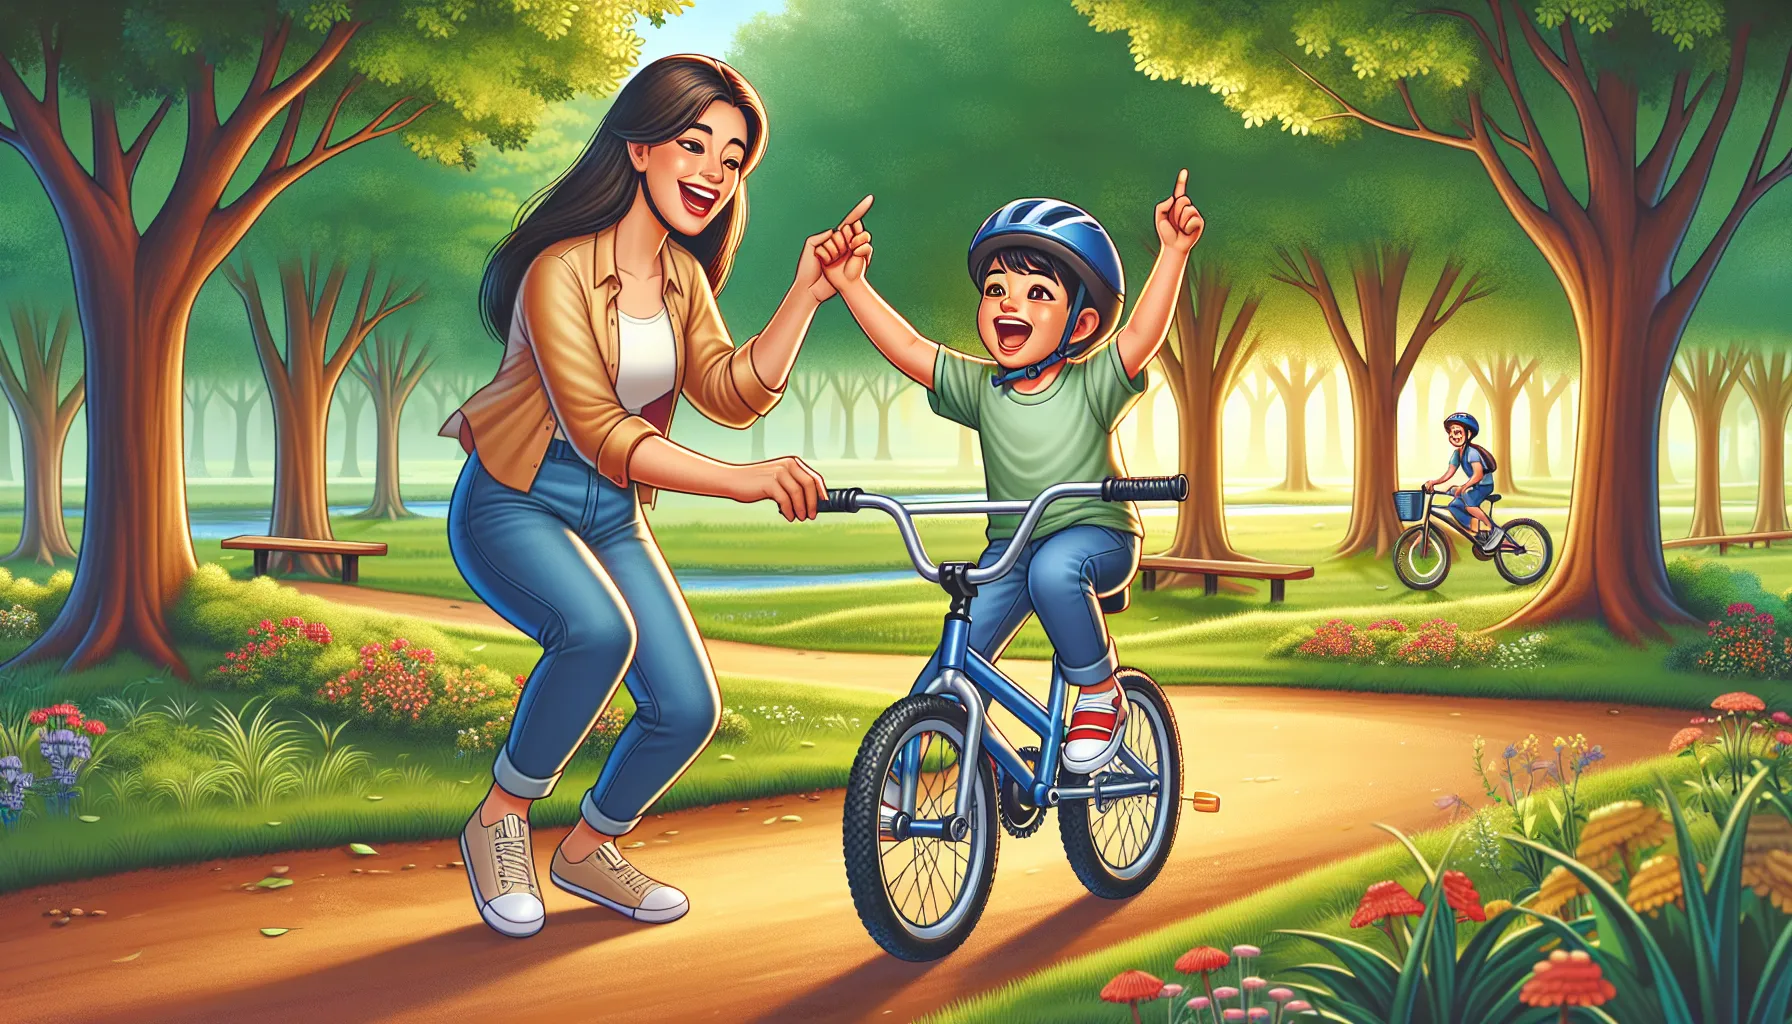 Incentivar seu filho a andar de bicicleta pode ser uma ótima maneira de promover um estilo de vida ativo e saudável. Aqui estão algumas dicas para ajudá-lo nesse processo:

1. Comece cedo: Introduza a bicicleta quando seu filho ainda é pequeno. Isso pode ser feito com uma bicicleta de equilíbrio, que não possui pedais, permitindo que a criança